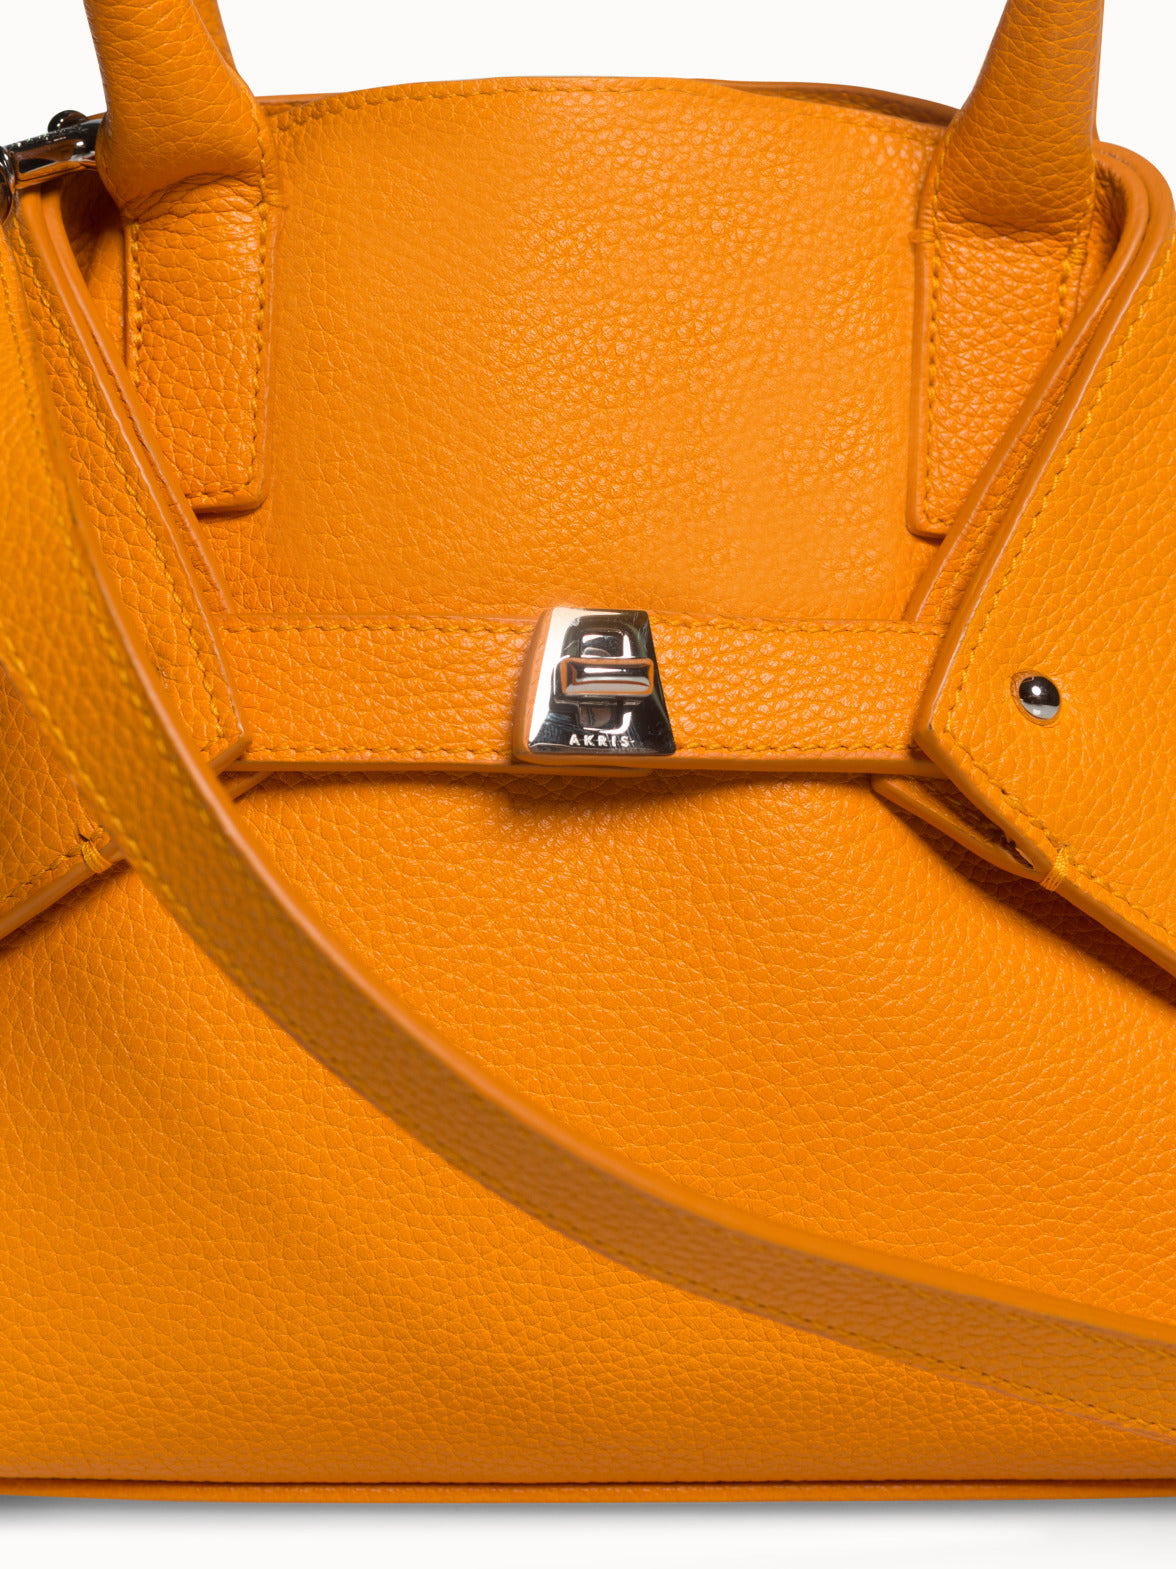 Little Messenger Bag in Cervo-Structured Calf Leather